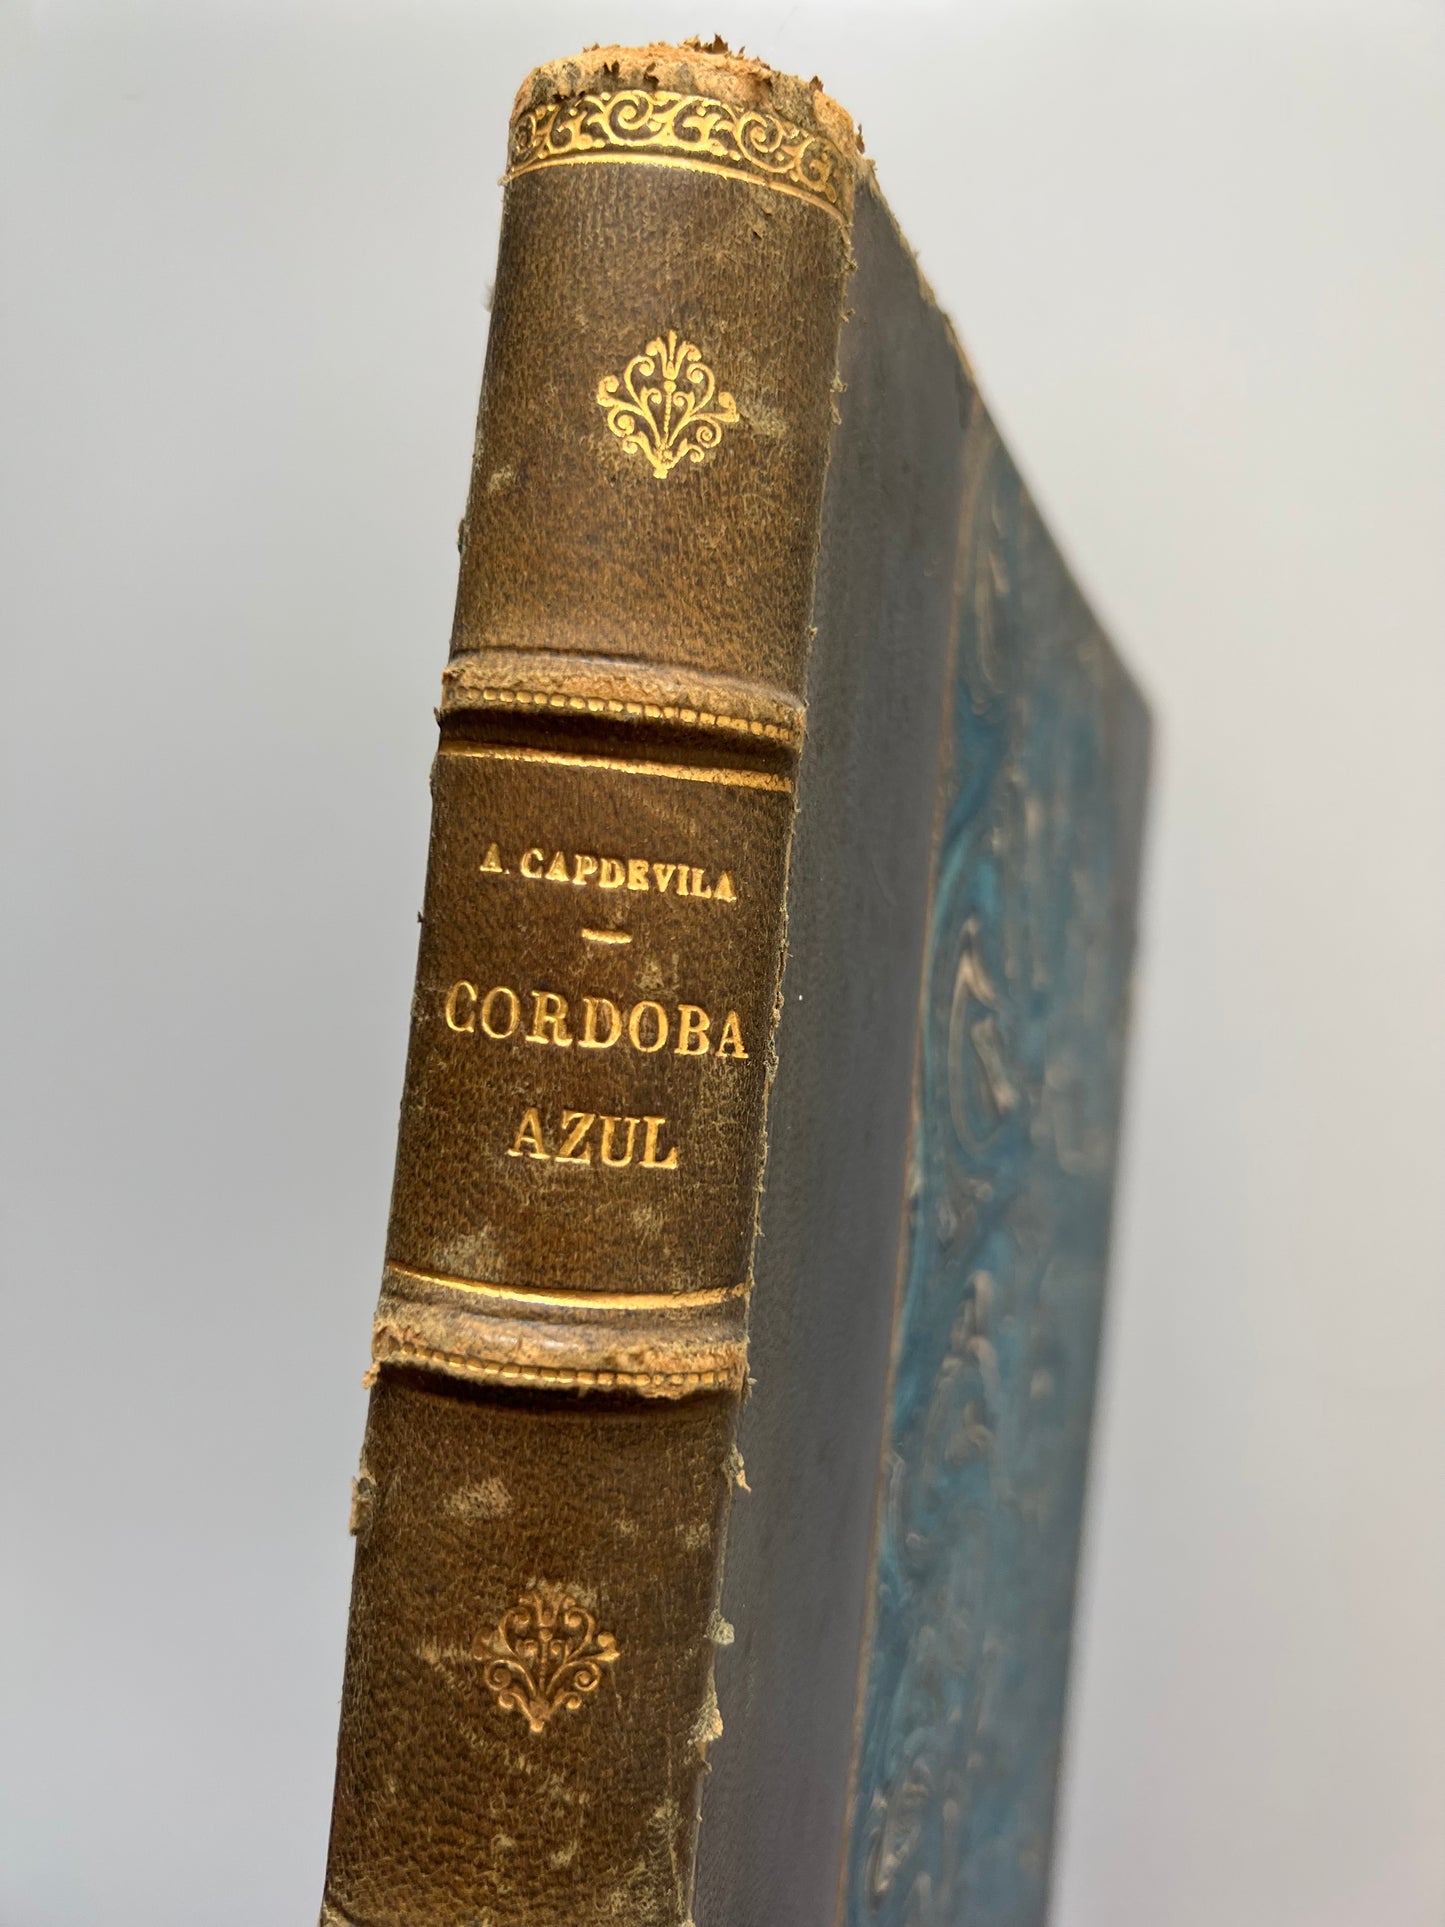 La Córdoba azul, Arturo Capdevila - Editorial Guillermo Kraft, 1949